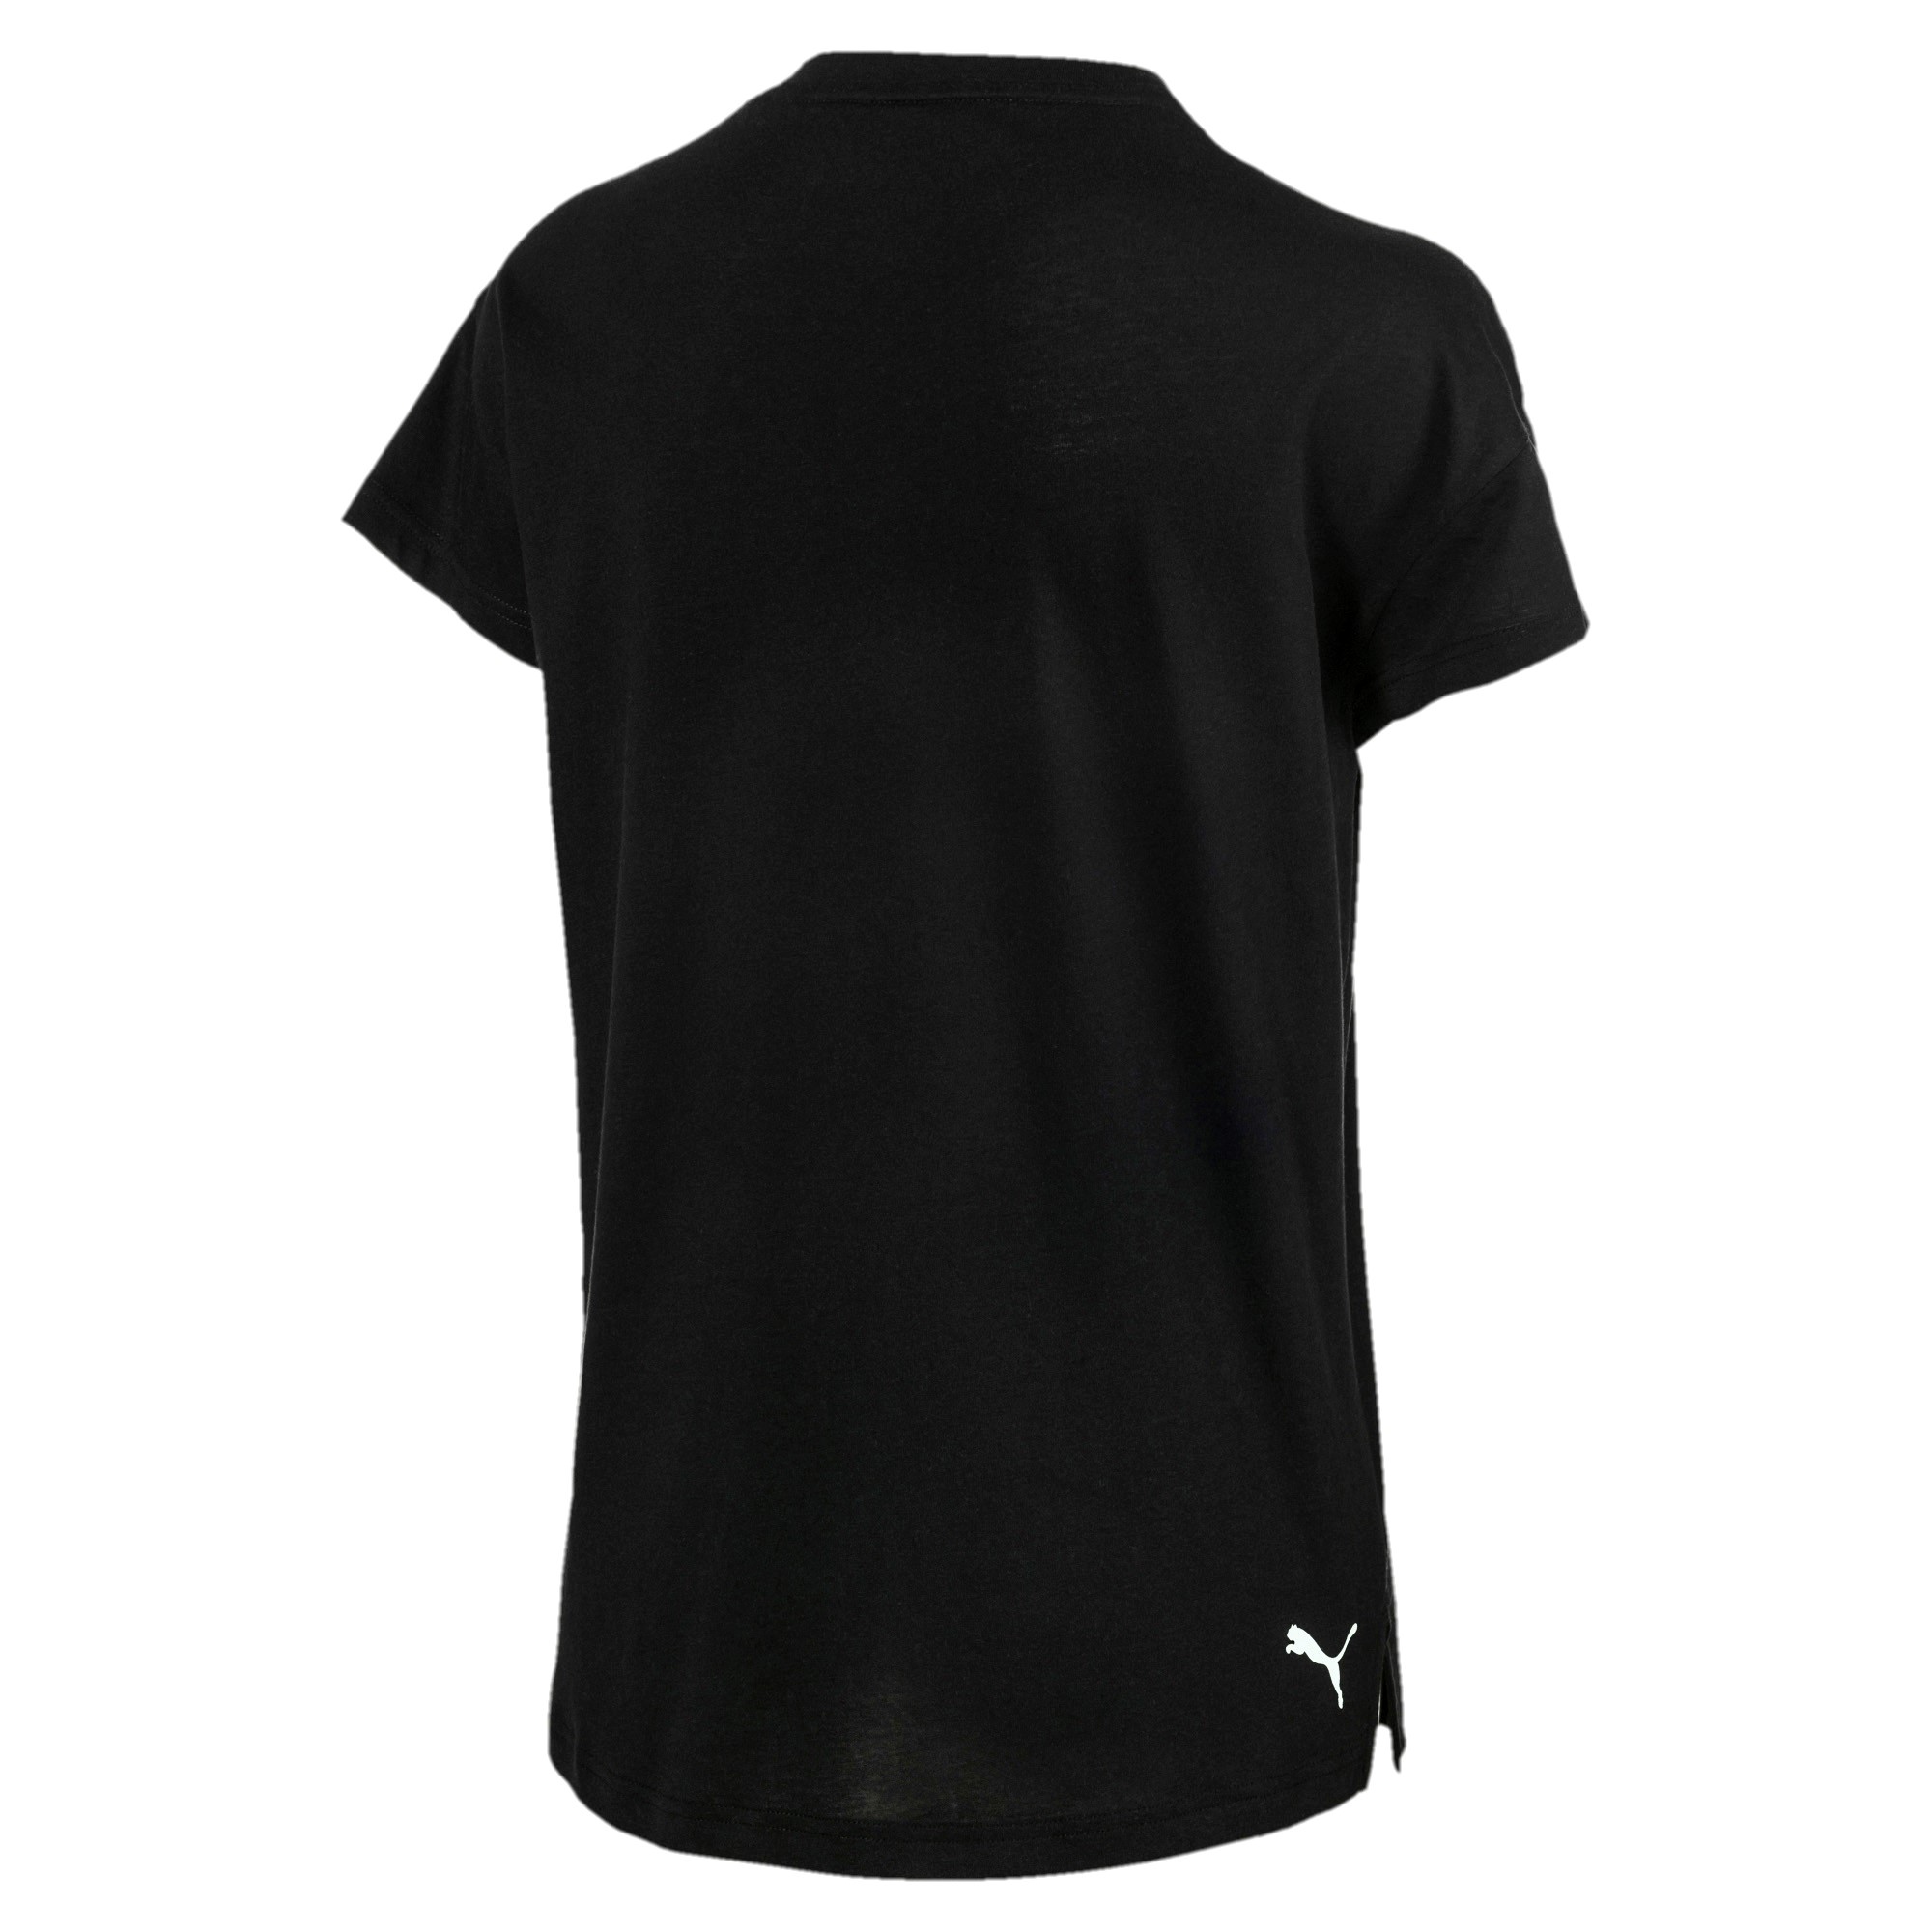 PUMA Damen Modern Sports Logo Tee DryCell T-Shirt schwarz 855188 01